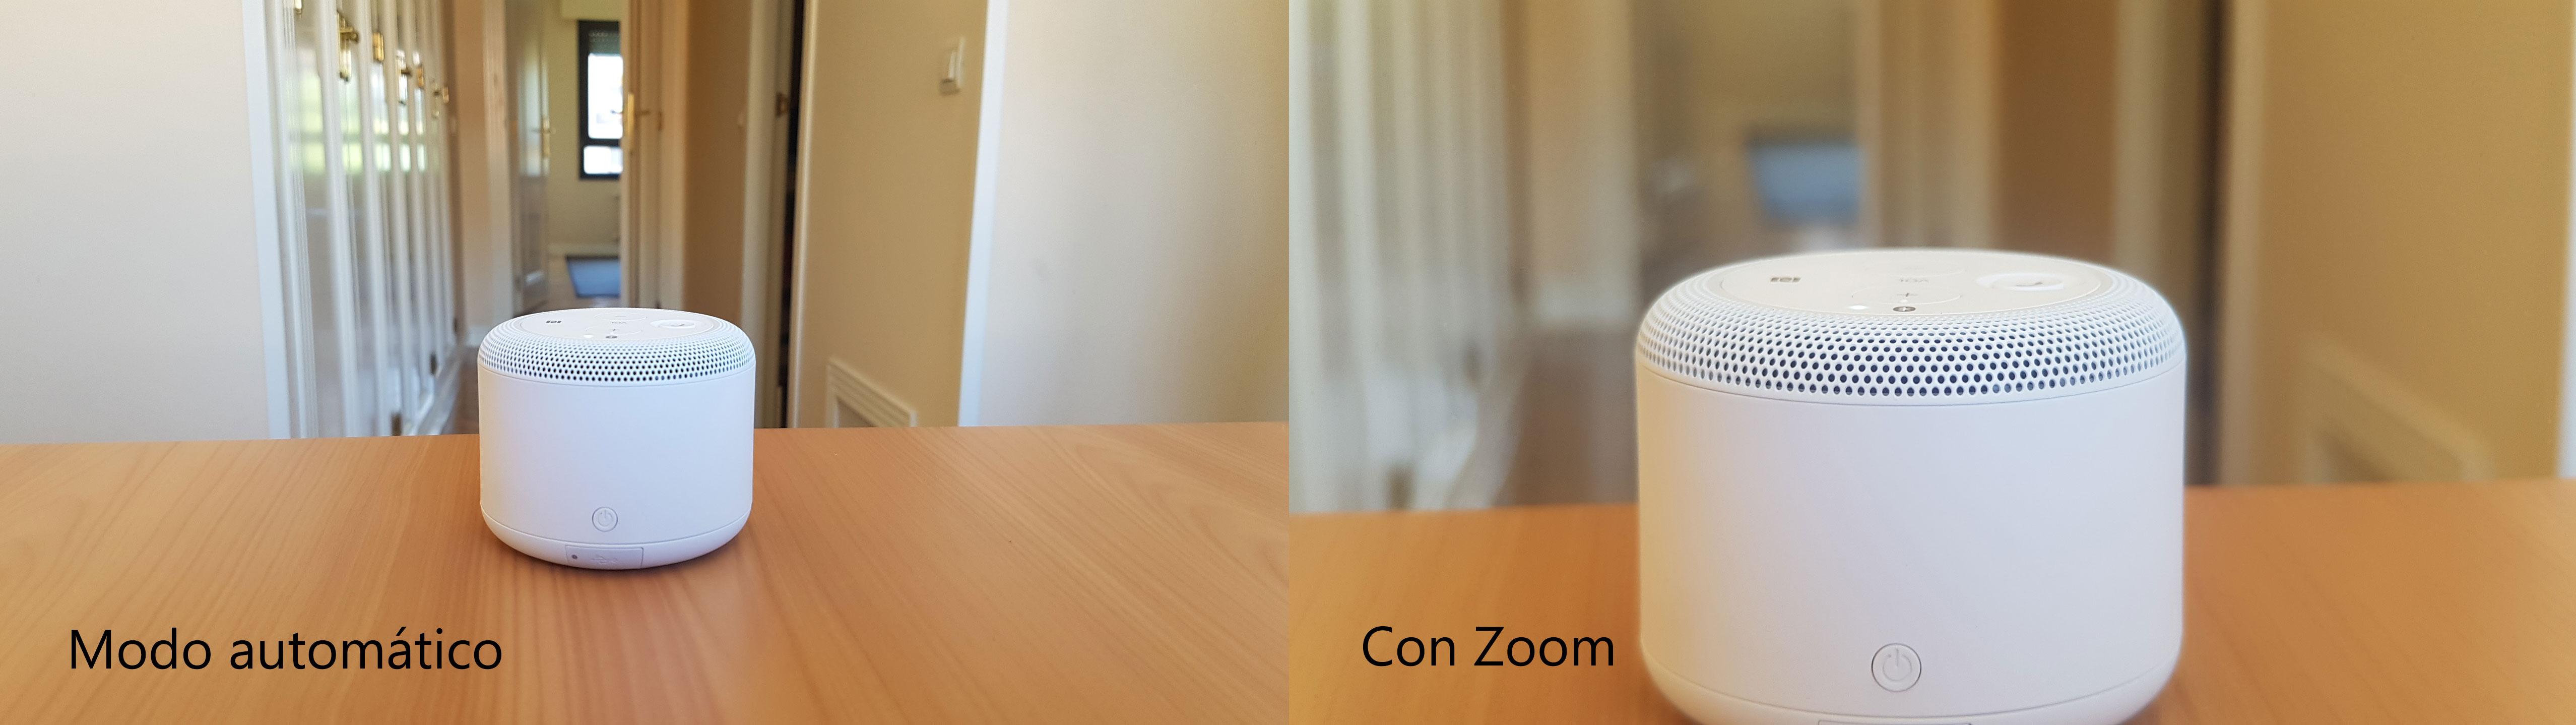 Modo Zoom con y sin Lens Cover